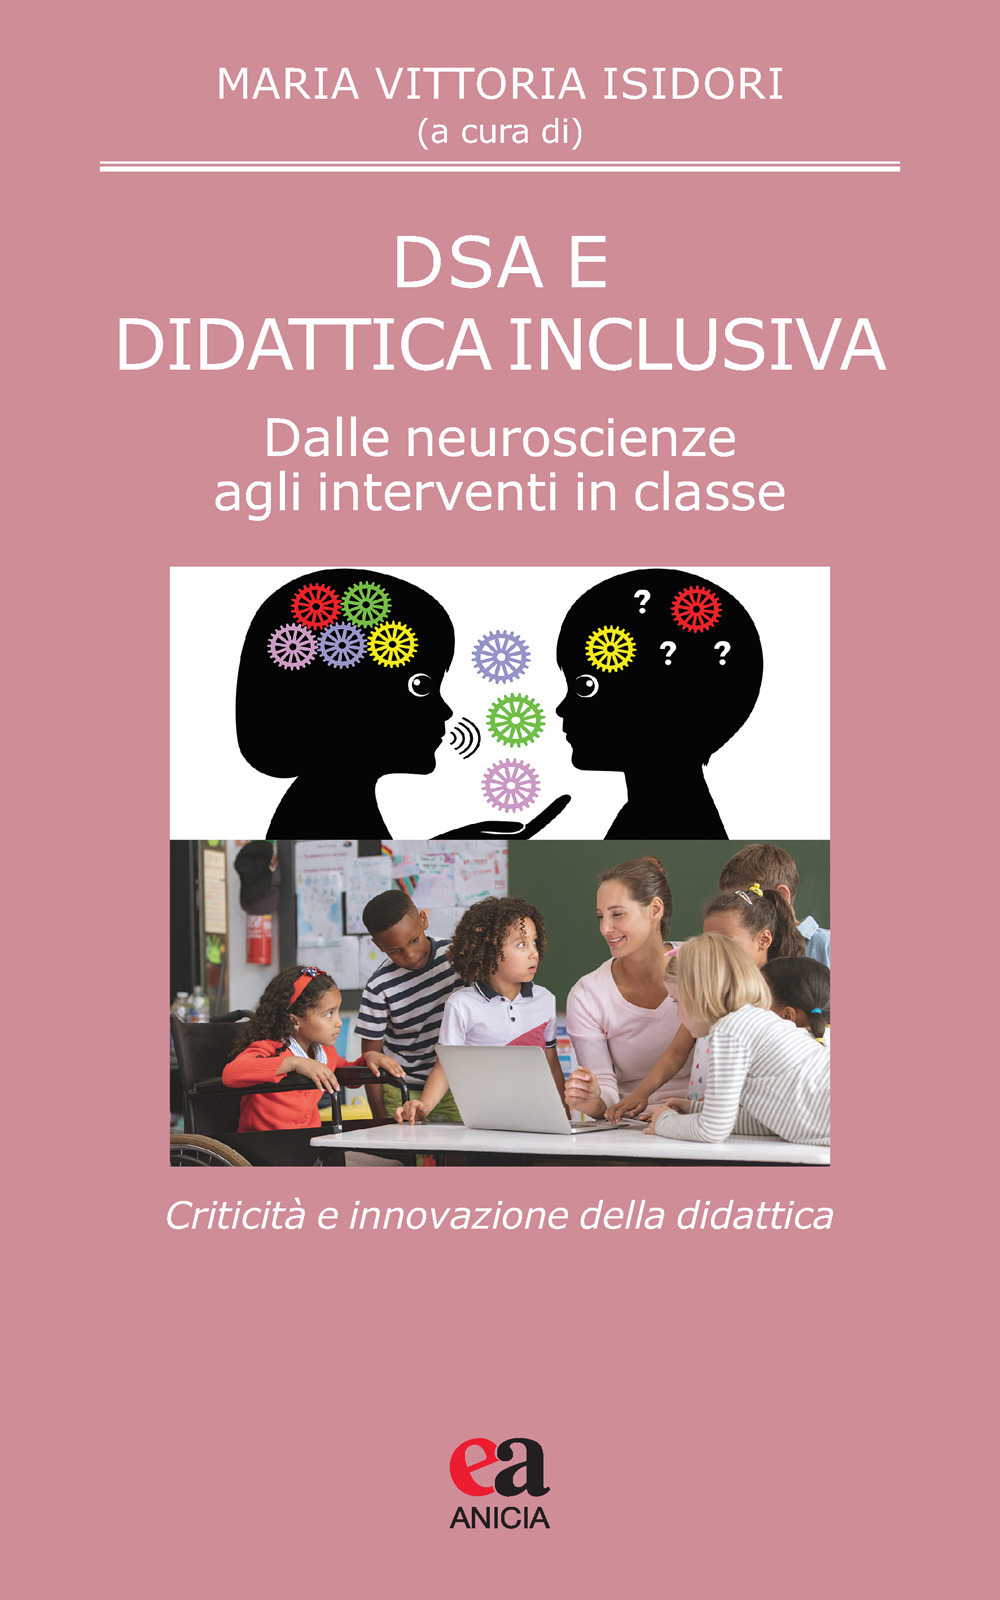 DSA e didattica inclusiva. Dalle neuroscienze agli interventi in classe. Criticità e innovazione della didattica